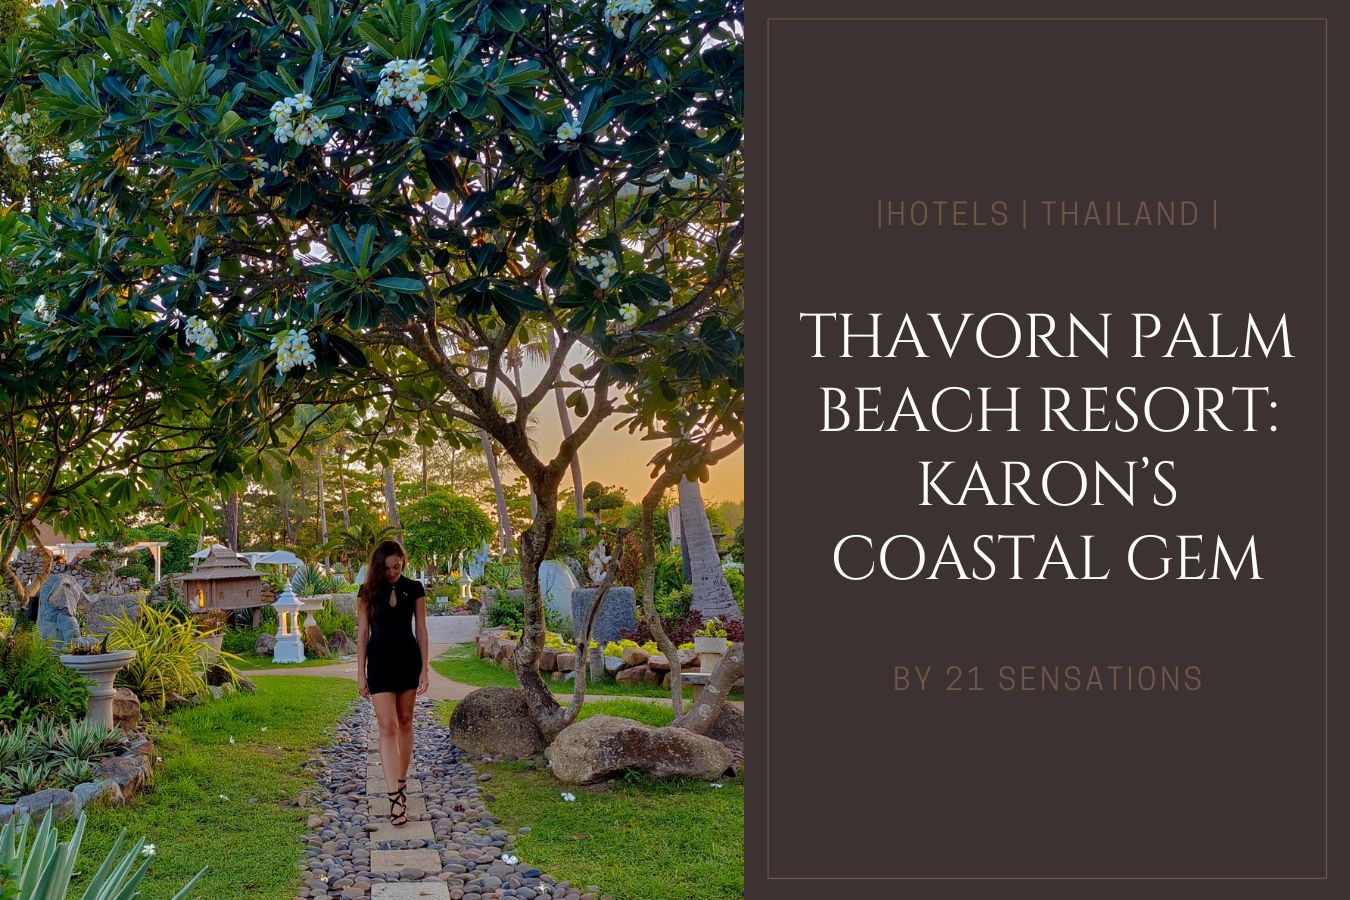 Thavorn Palm Beach Resort Karon’s Coastal Gem